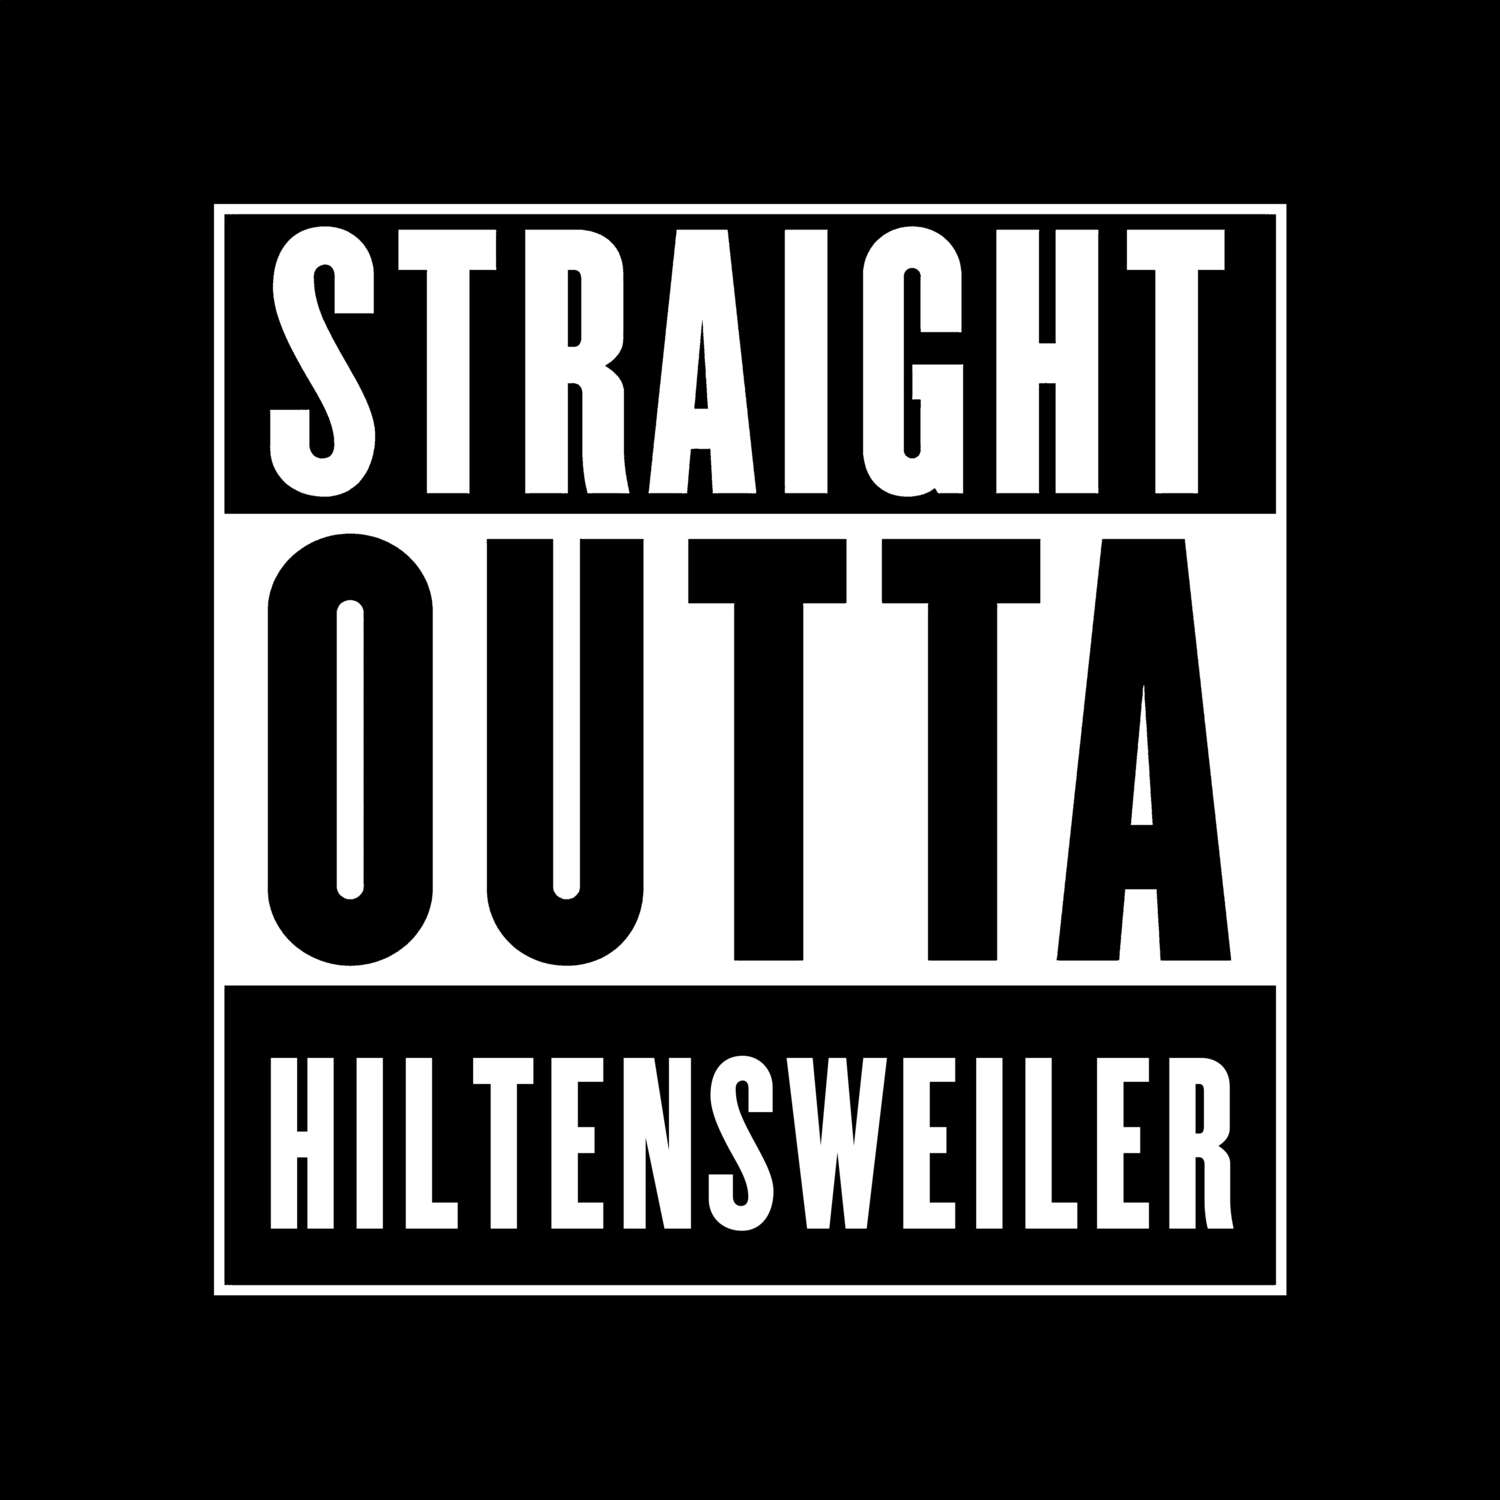 Hiltensweiler T-Shirt »Straight Outta«